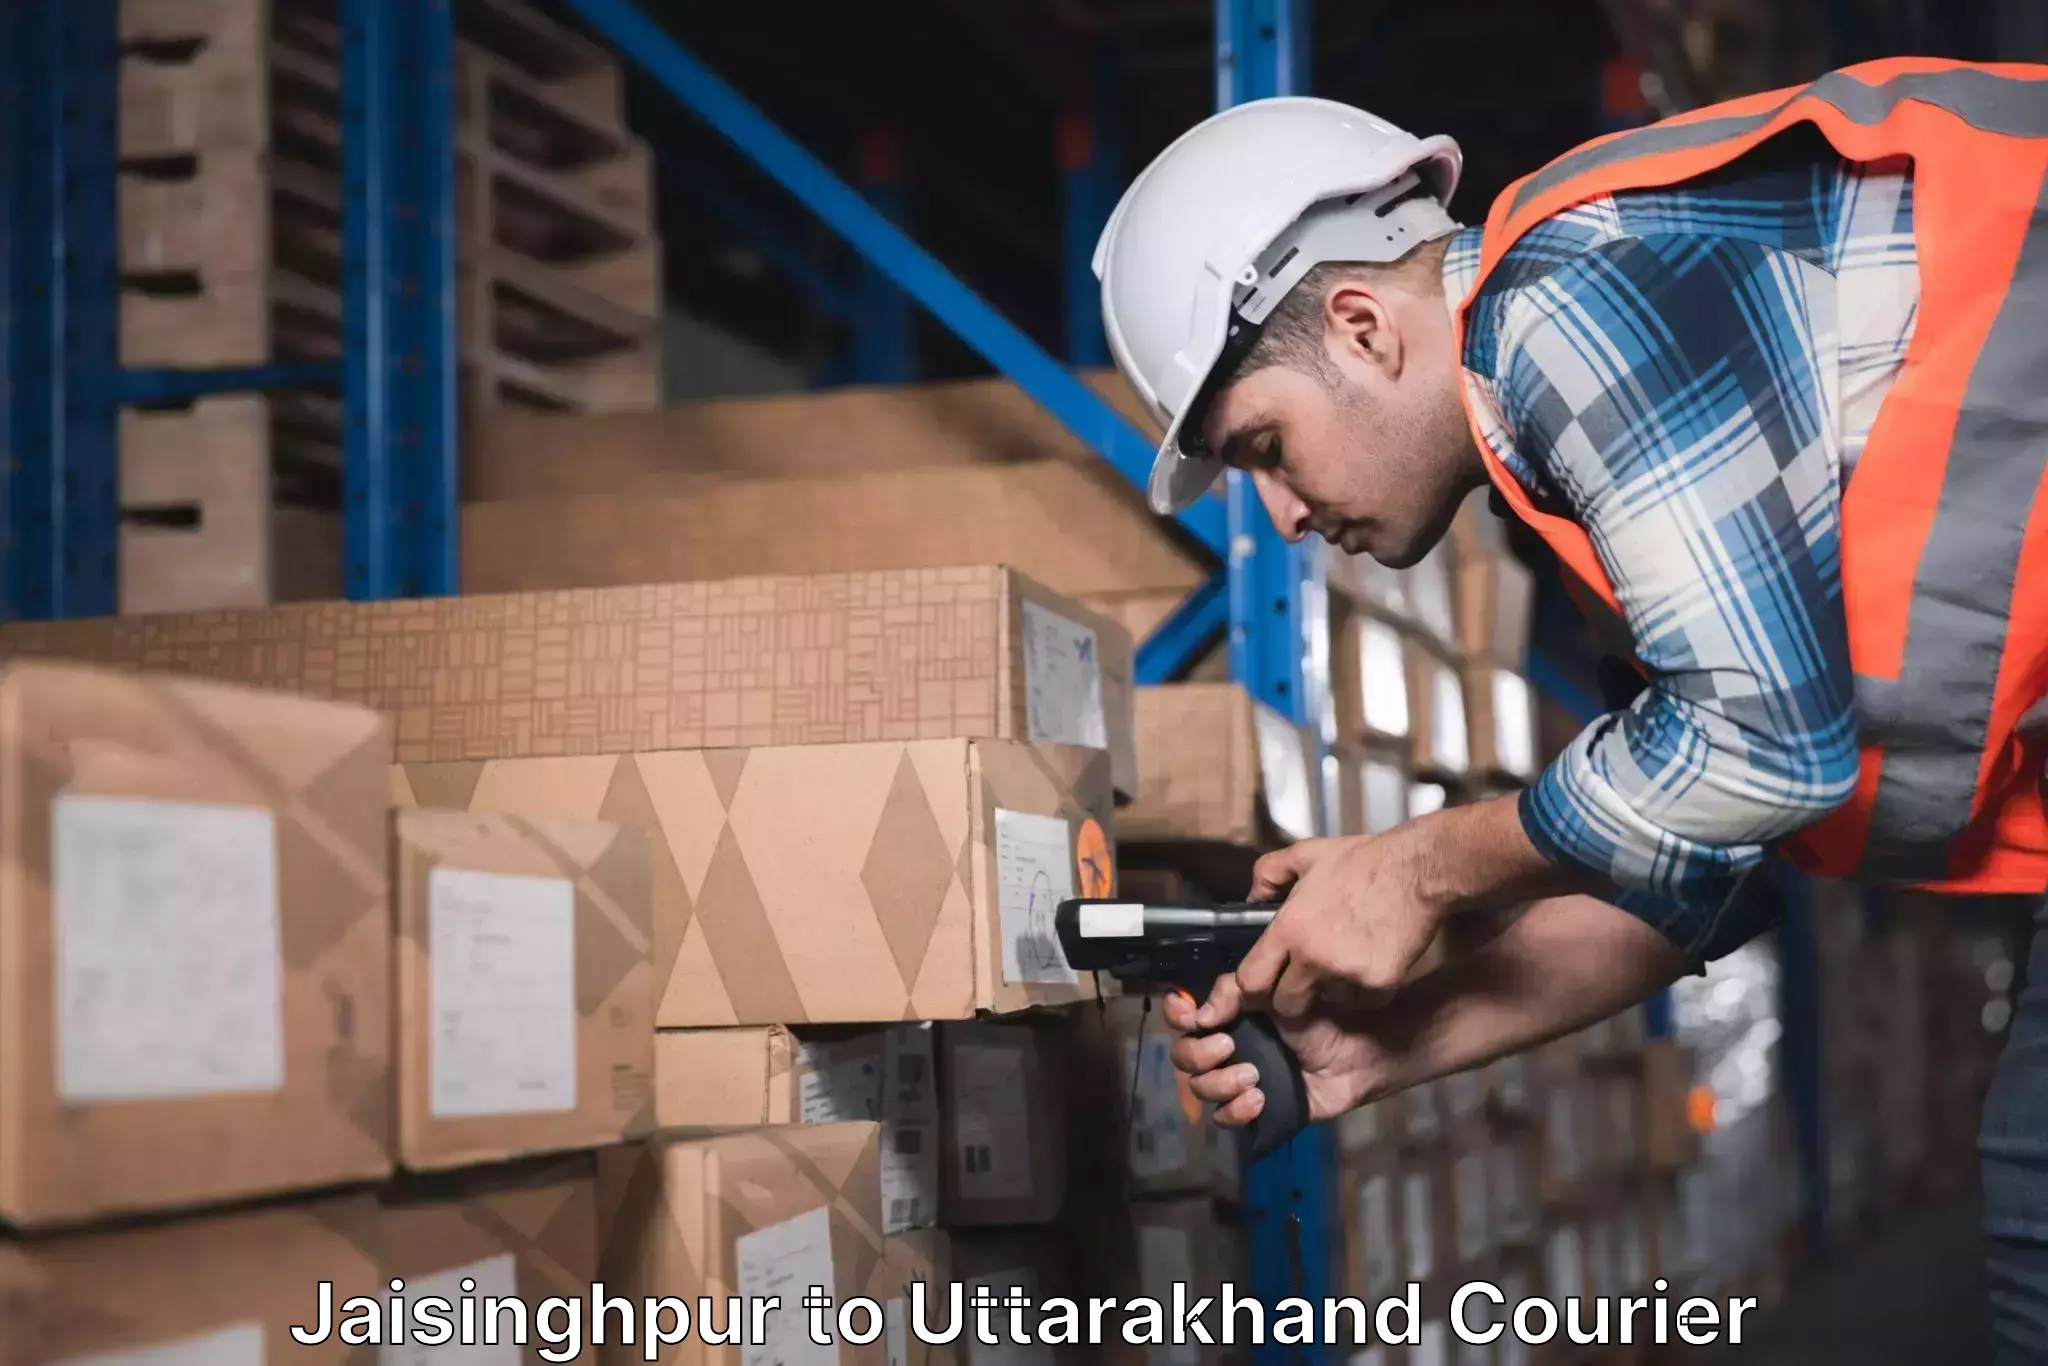 High-speed parcel service in Jaisinghpur to Uttarakhand